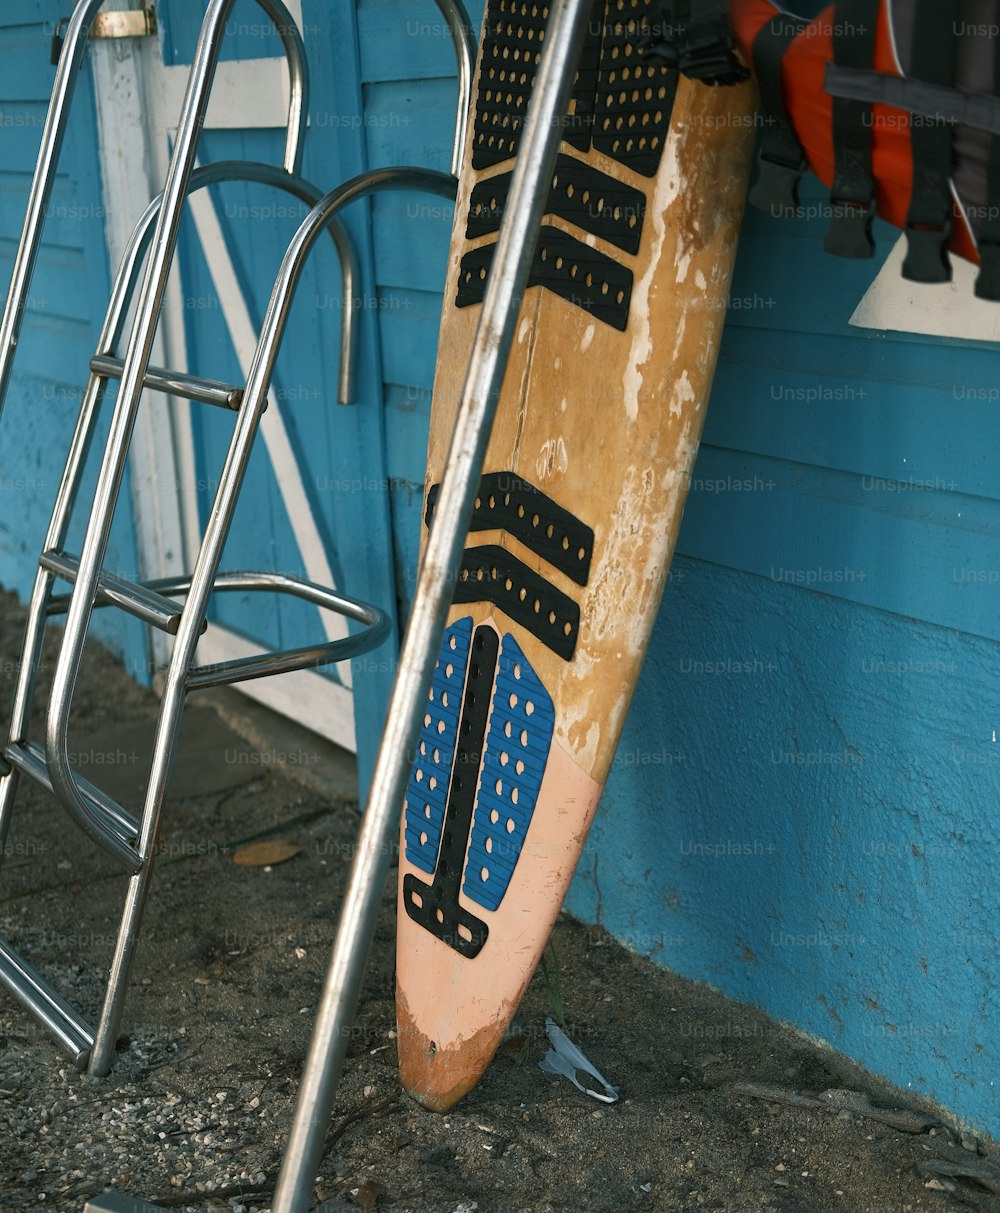 Un par de tablas de surf apoyadas contra una pared azul